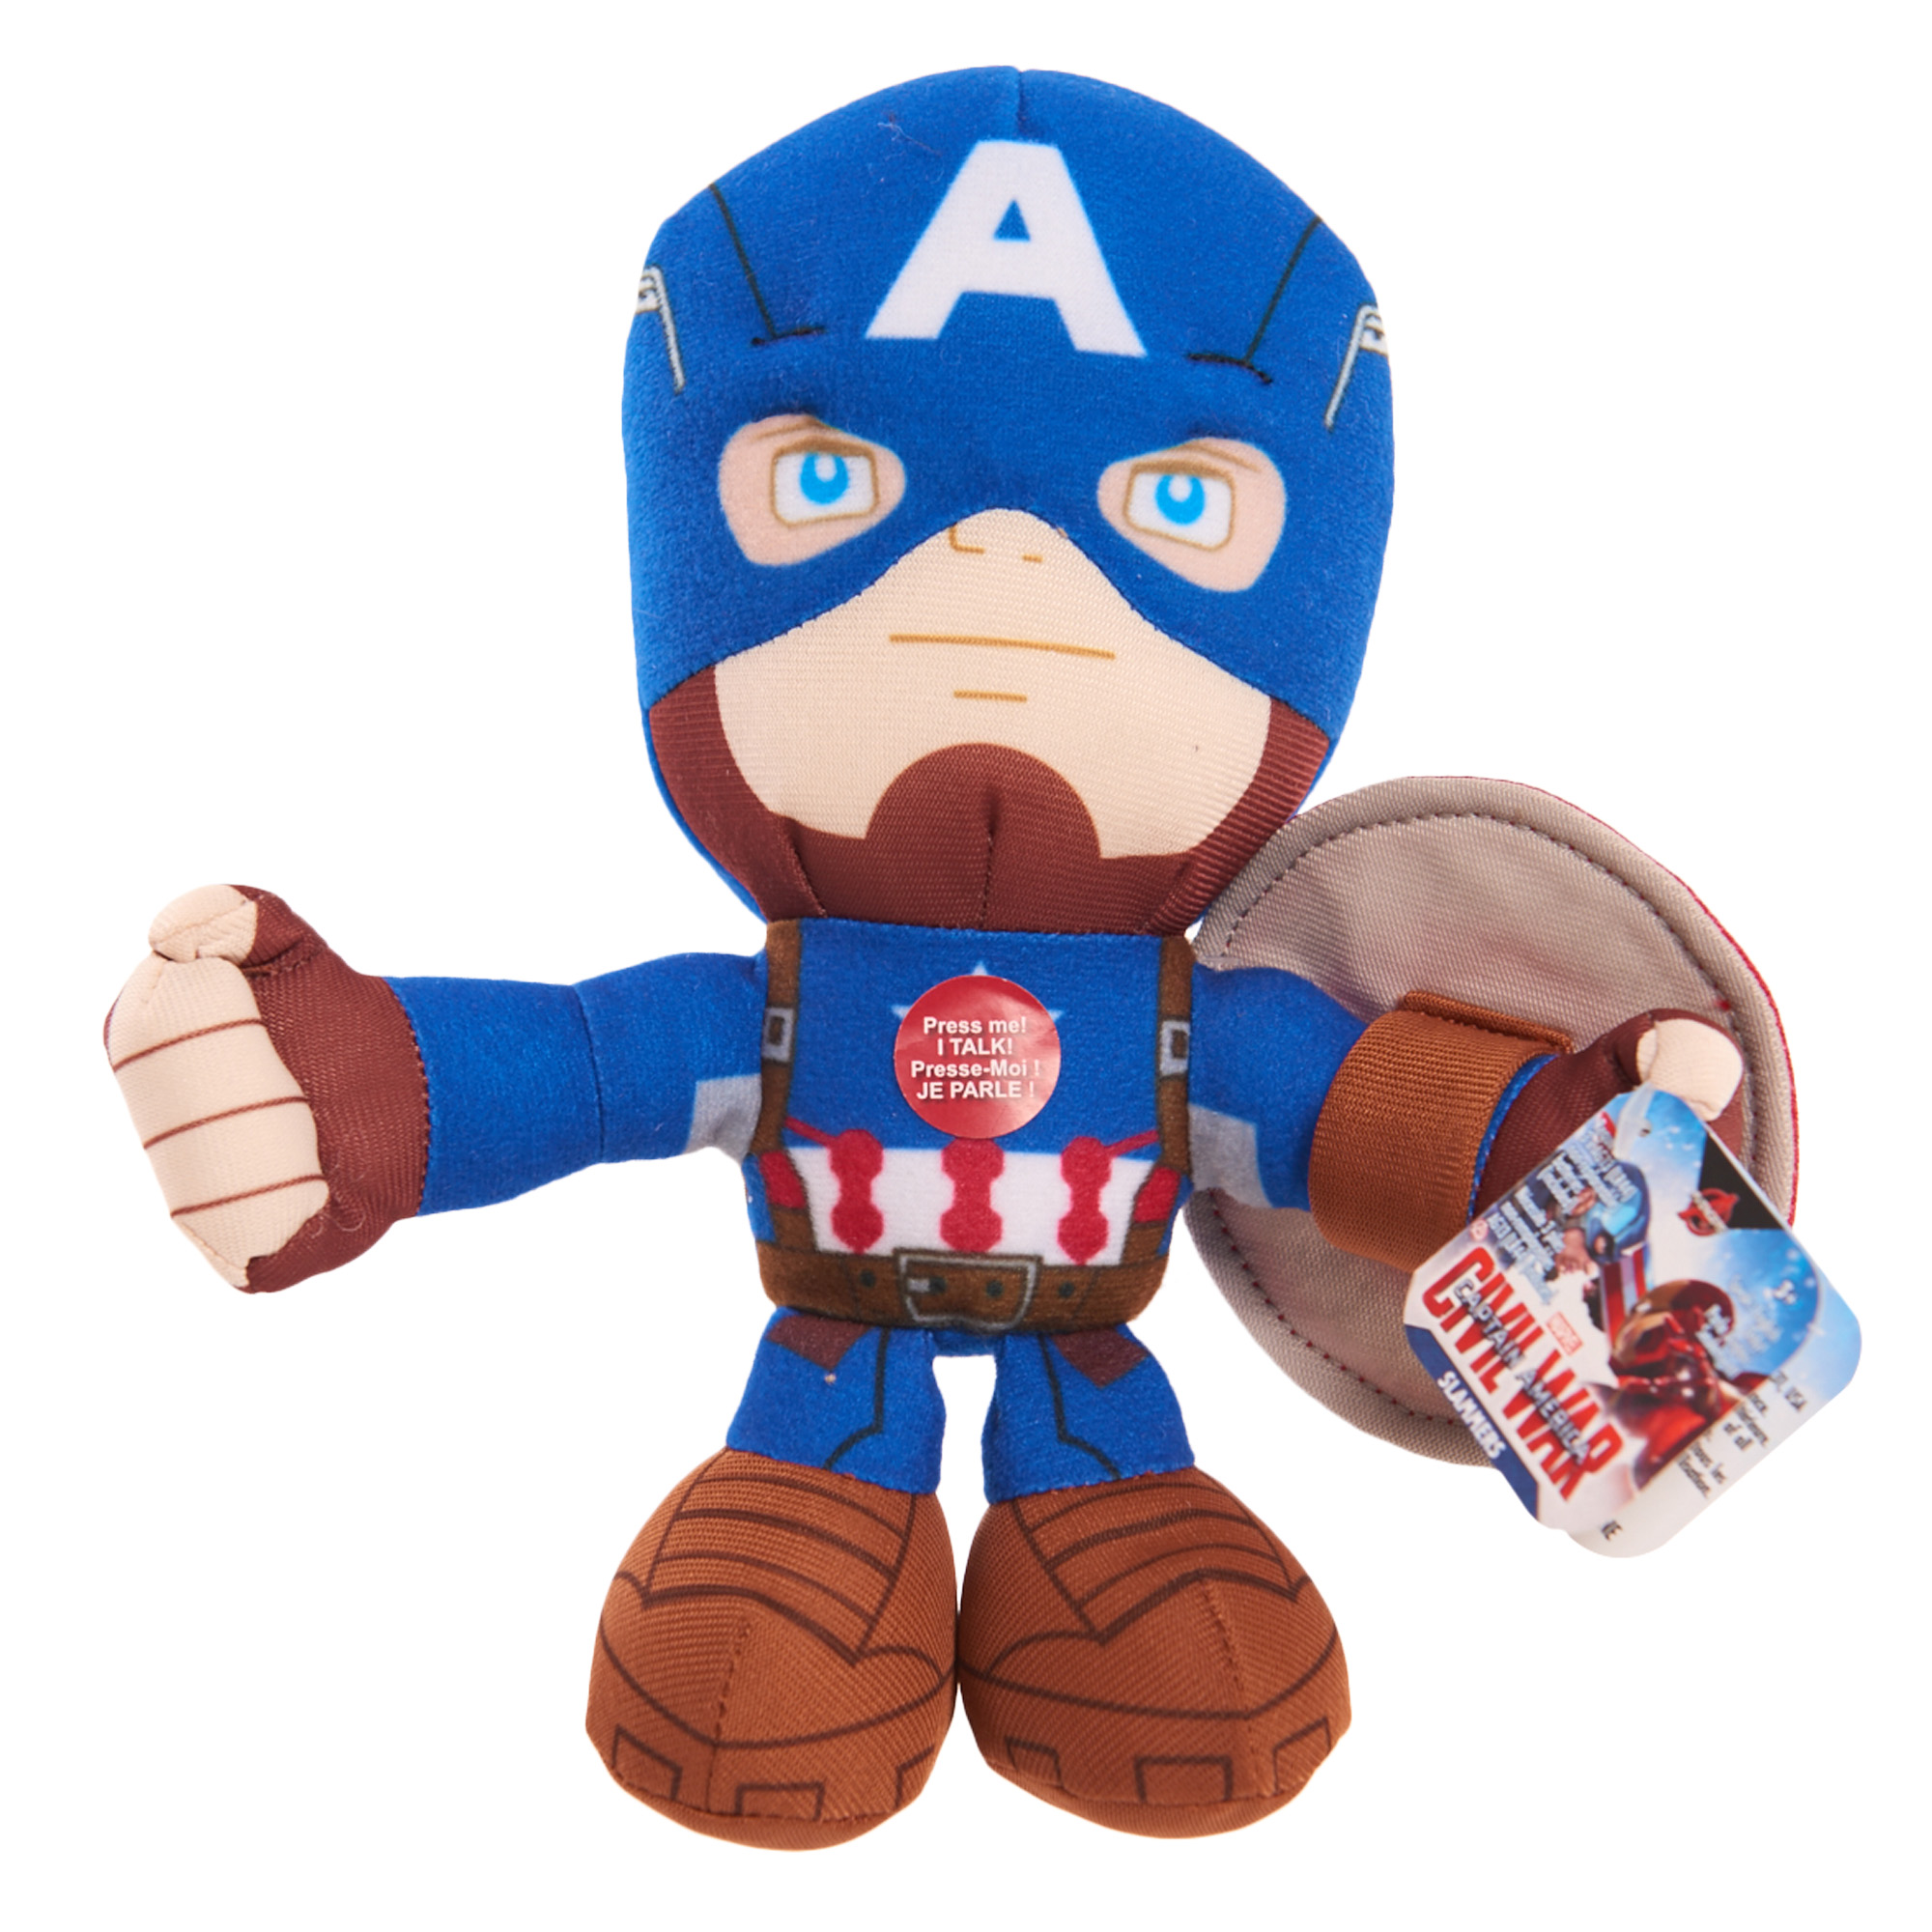 Disney 7" Marvel Avengers Talking Plush Captain America